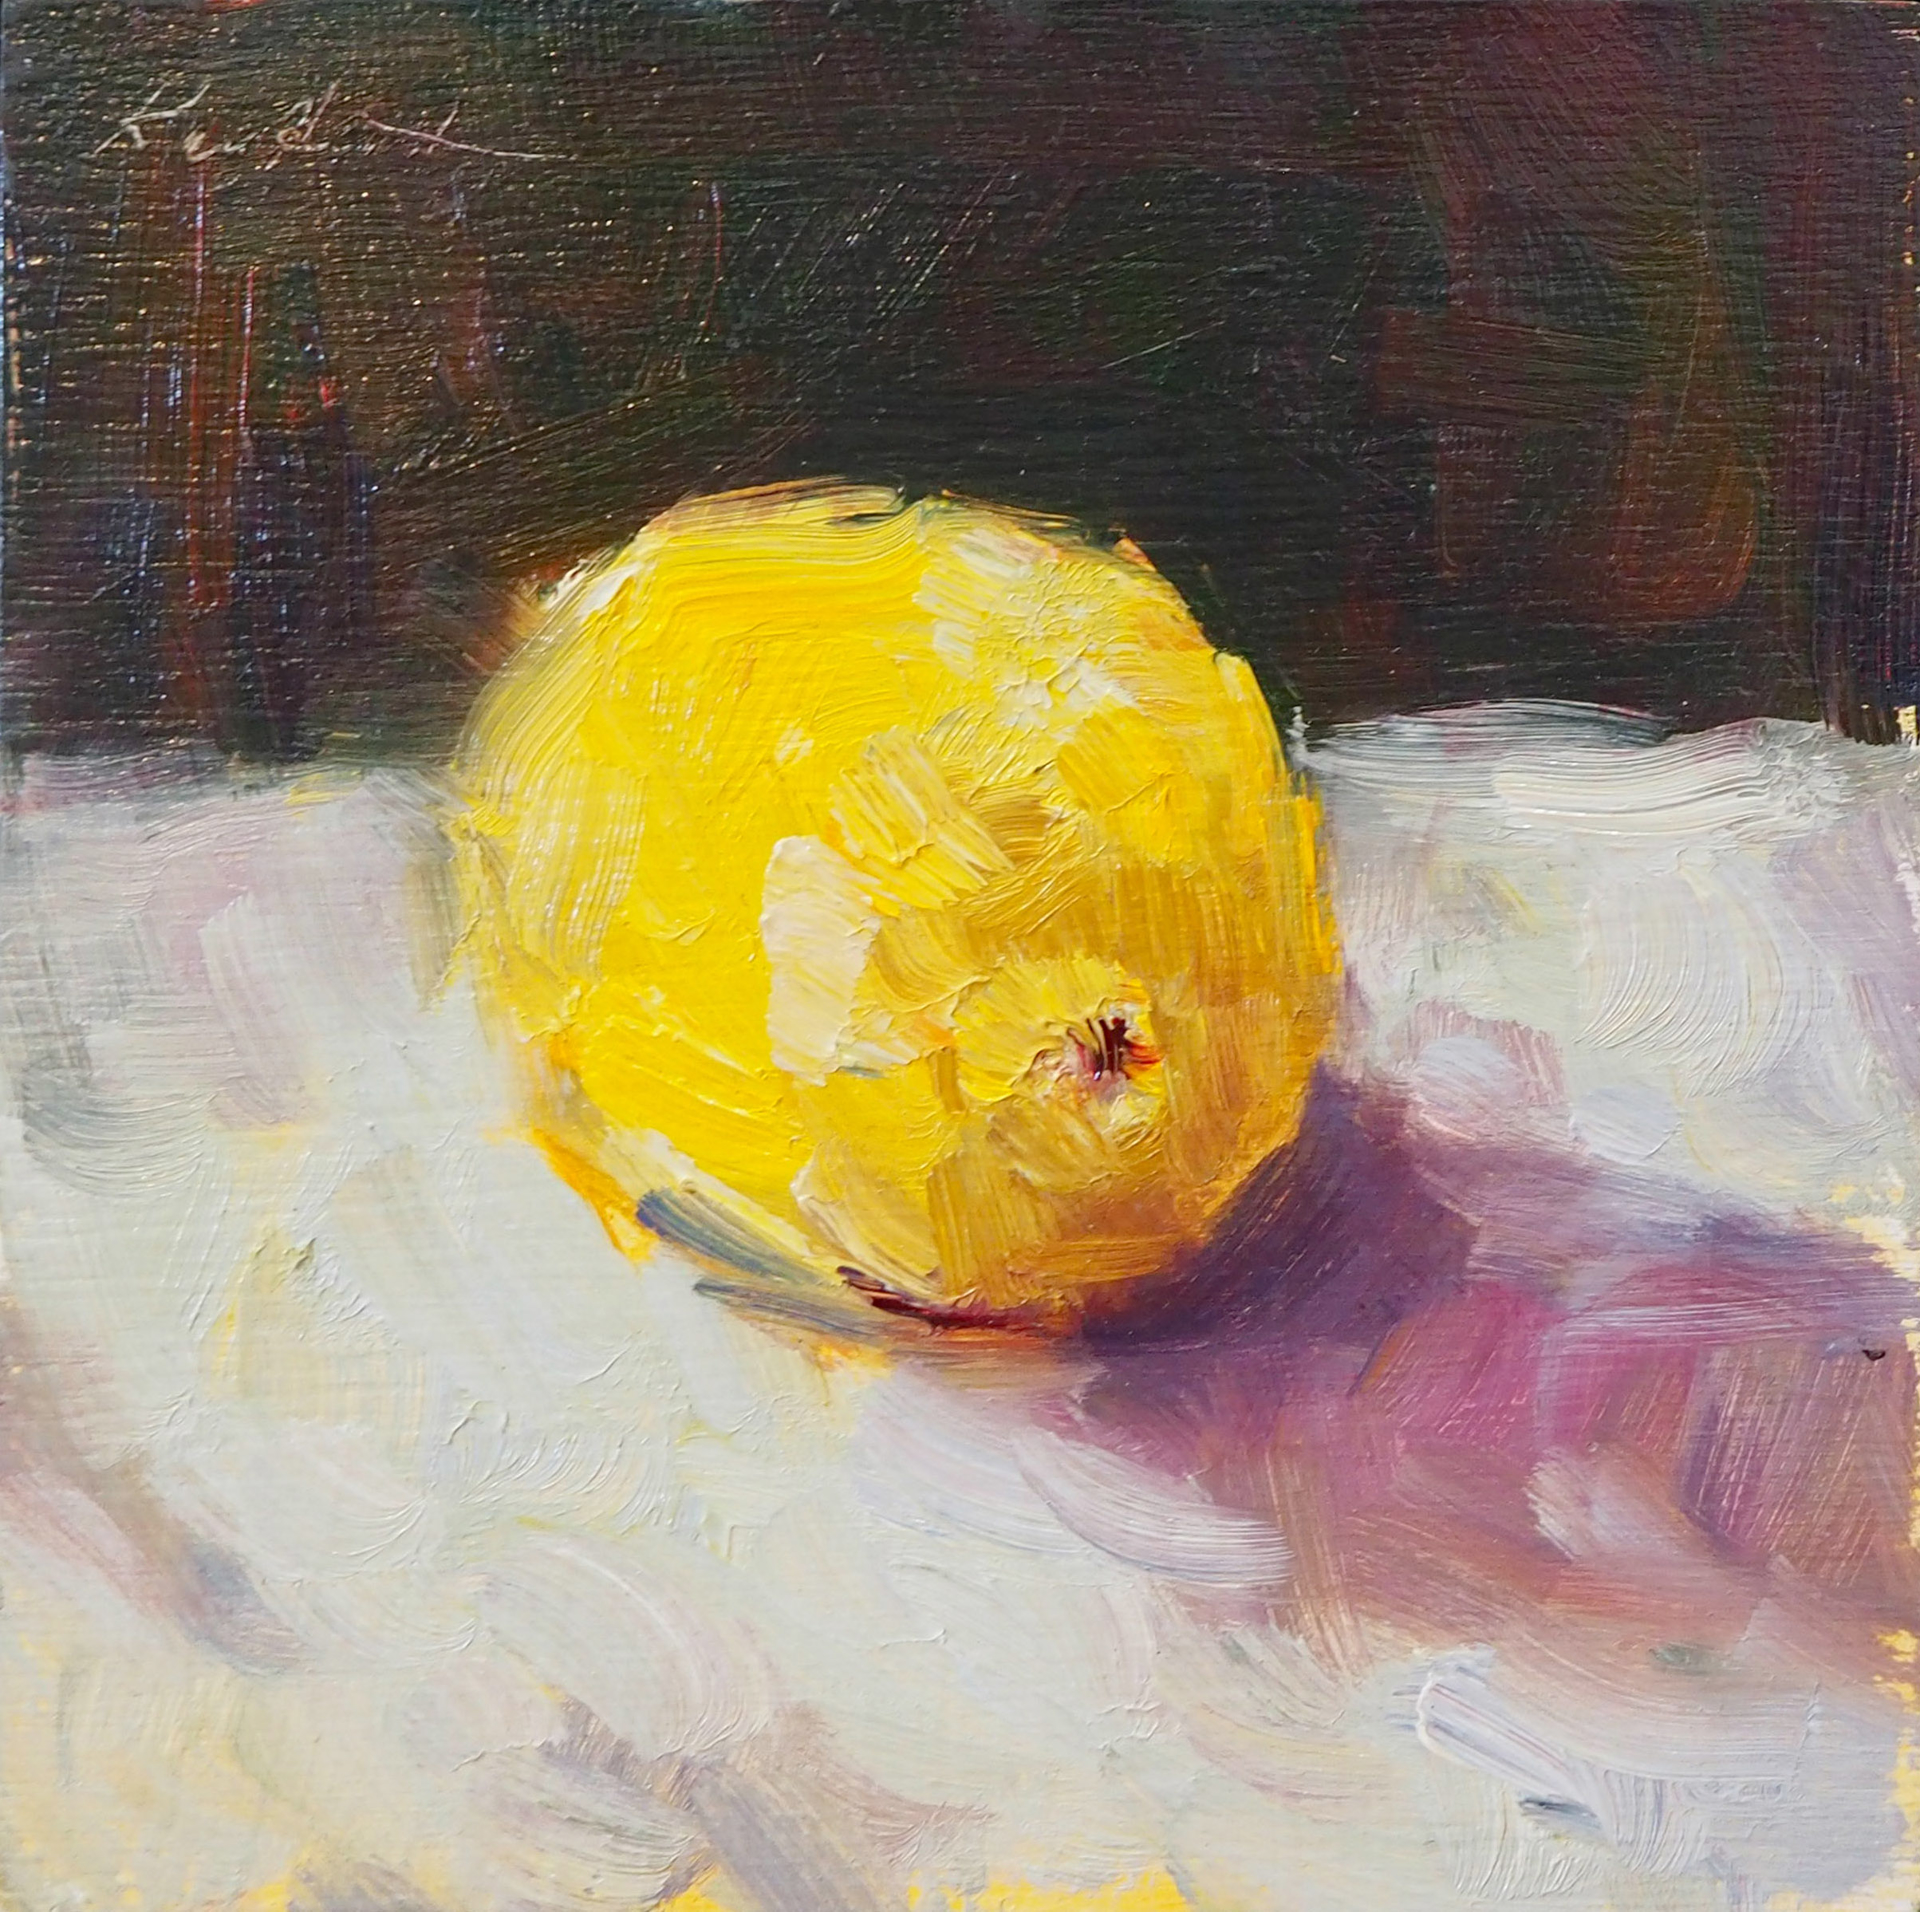 Lone Lemon II by Karen Hewitt Hagan